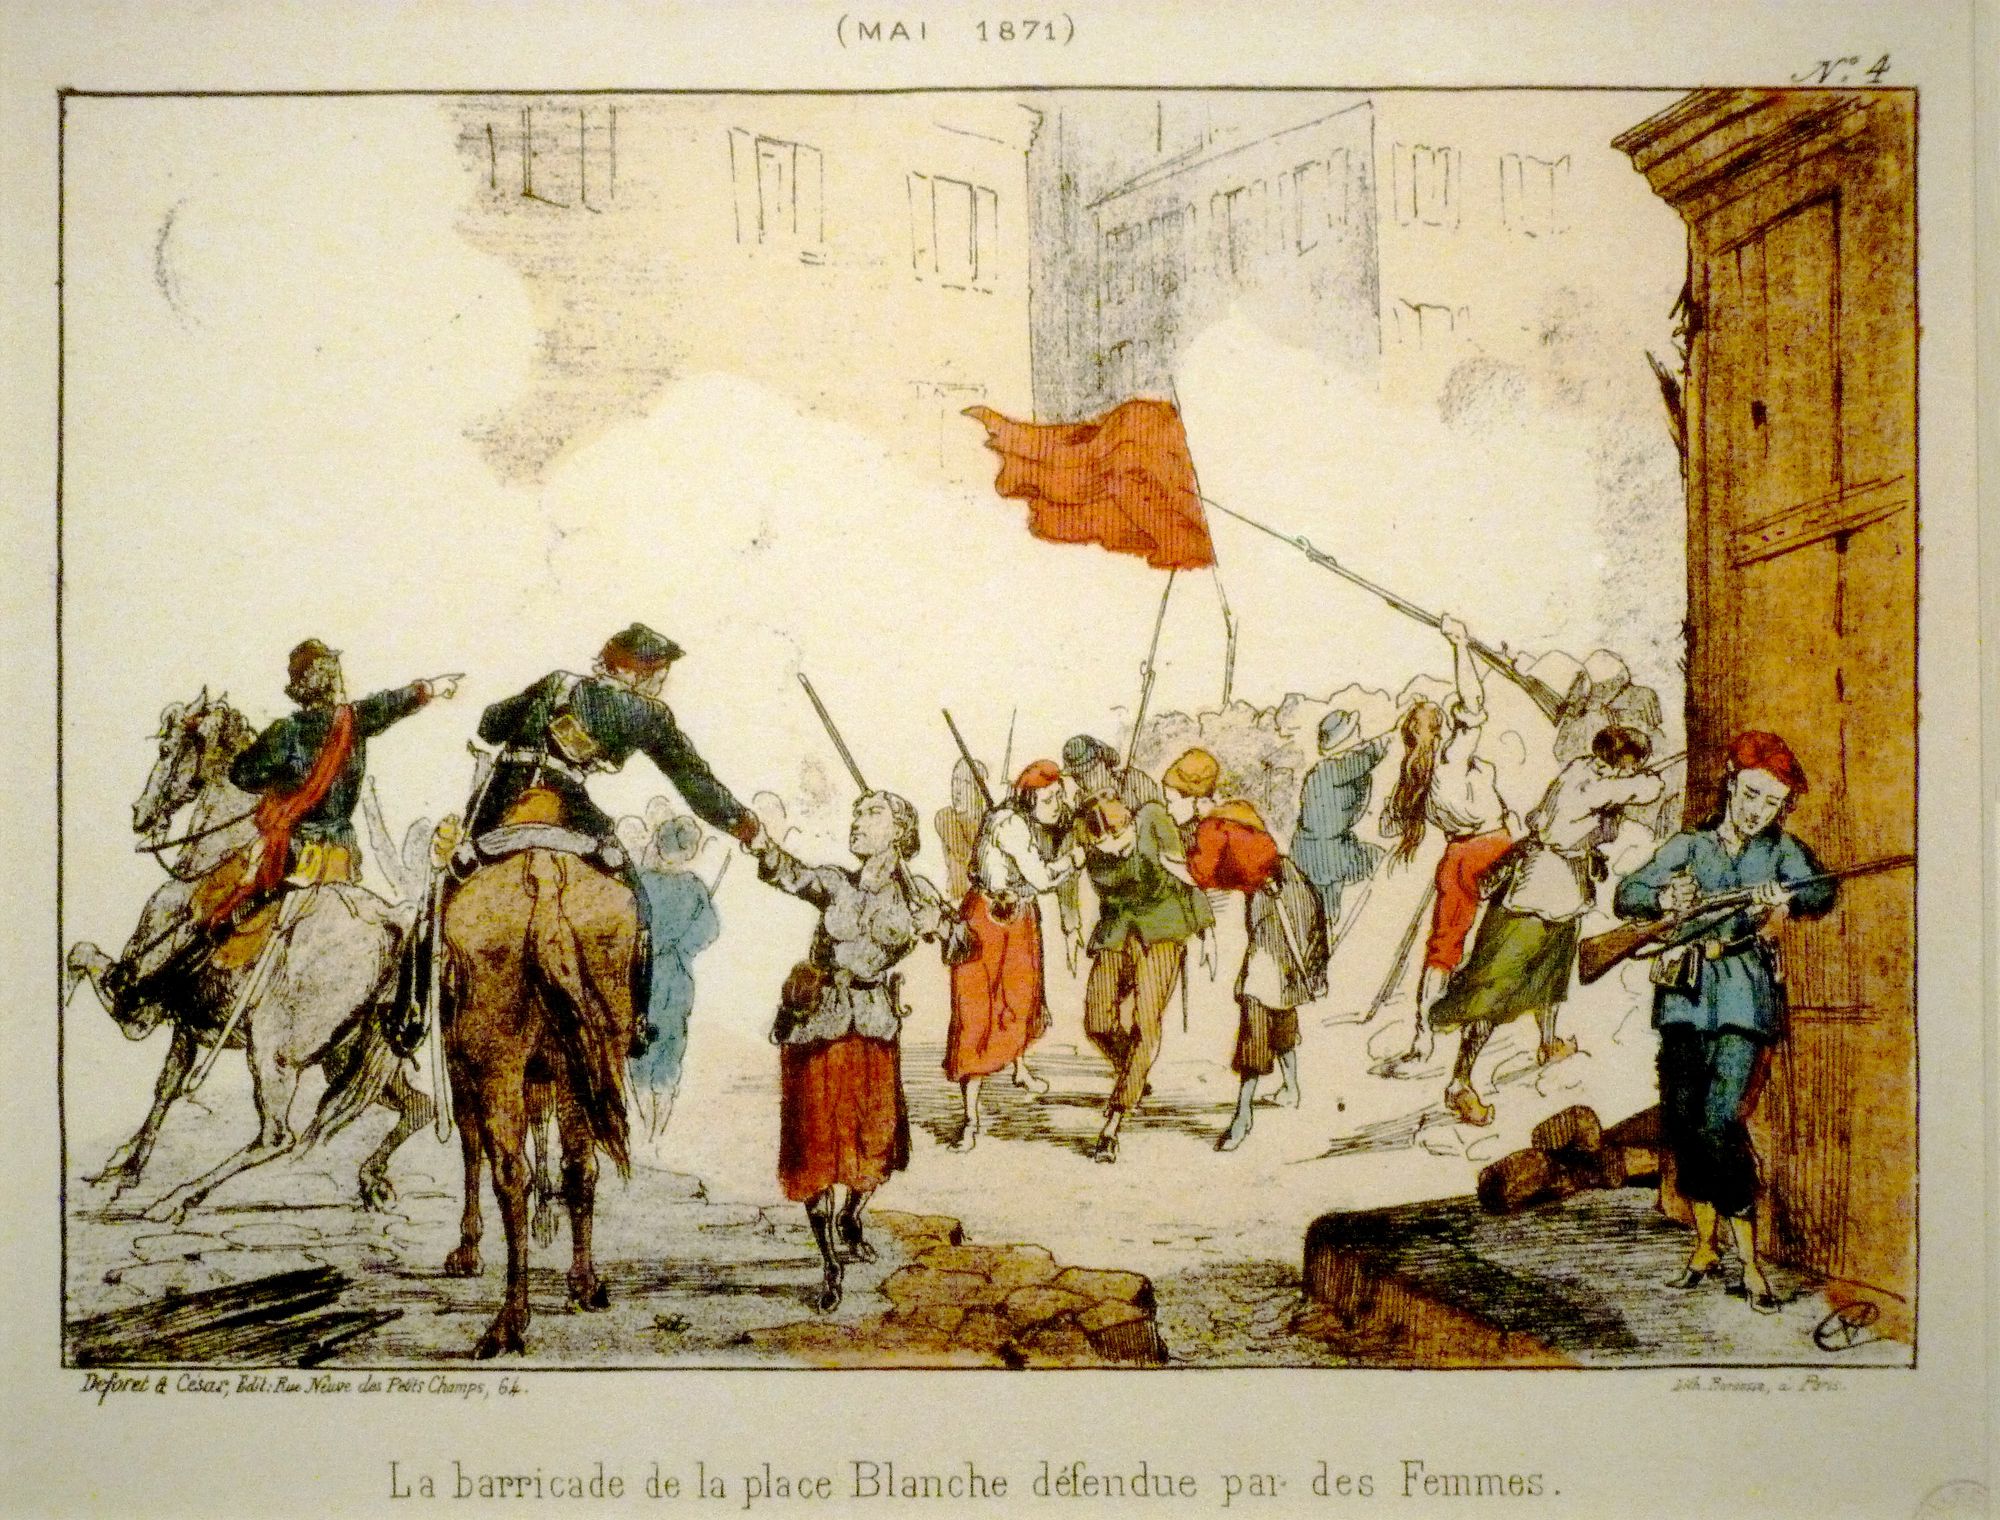 La Comuna de París: una revolución de 71 días